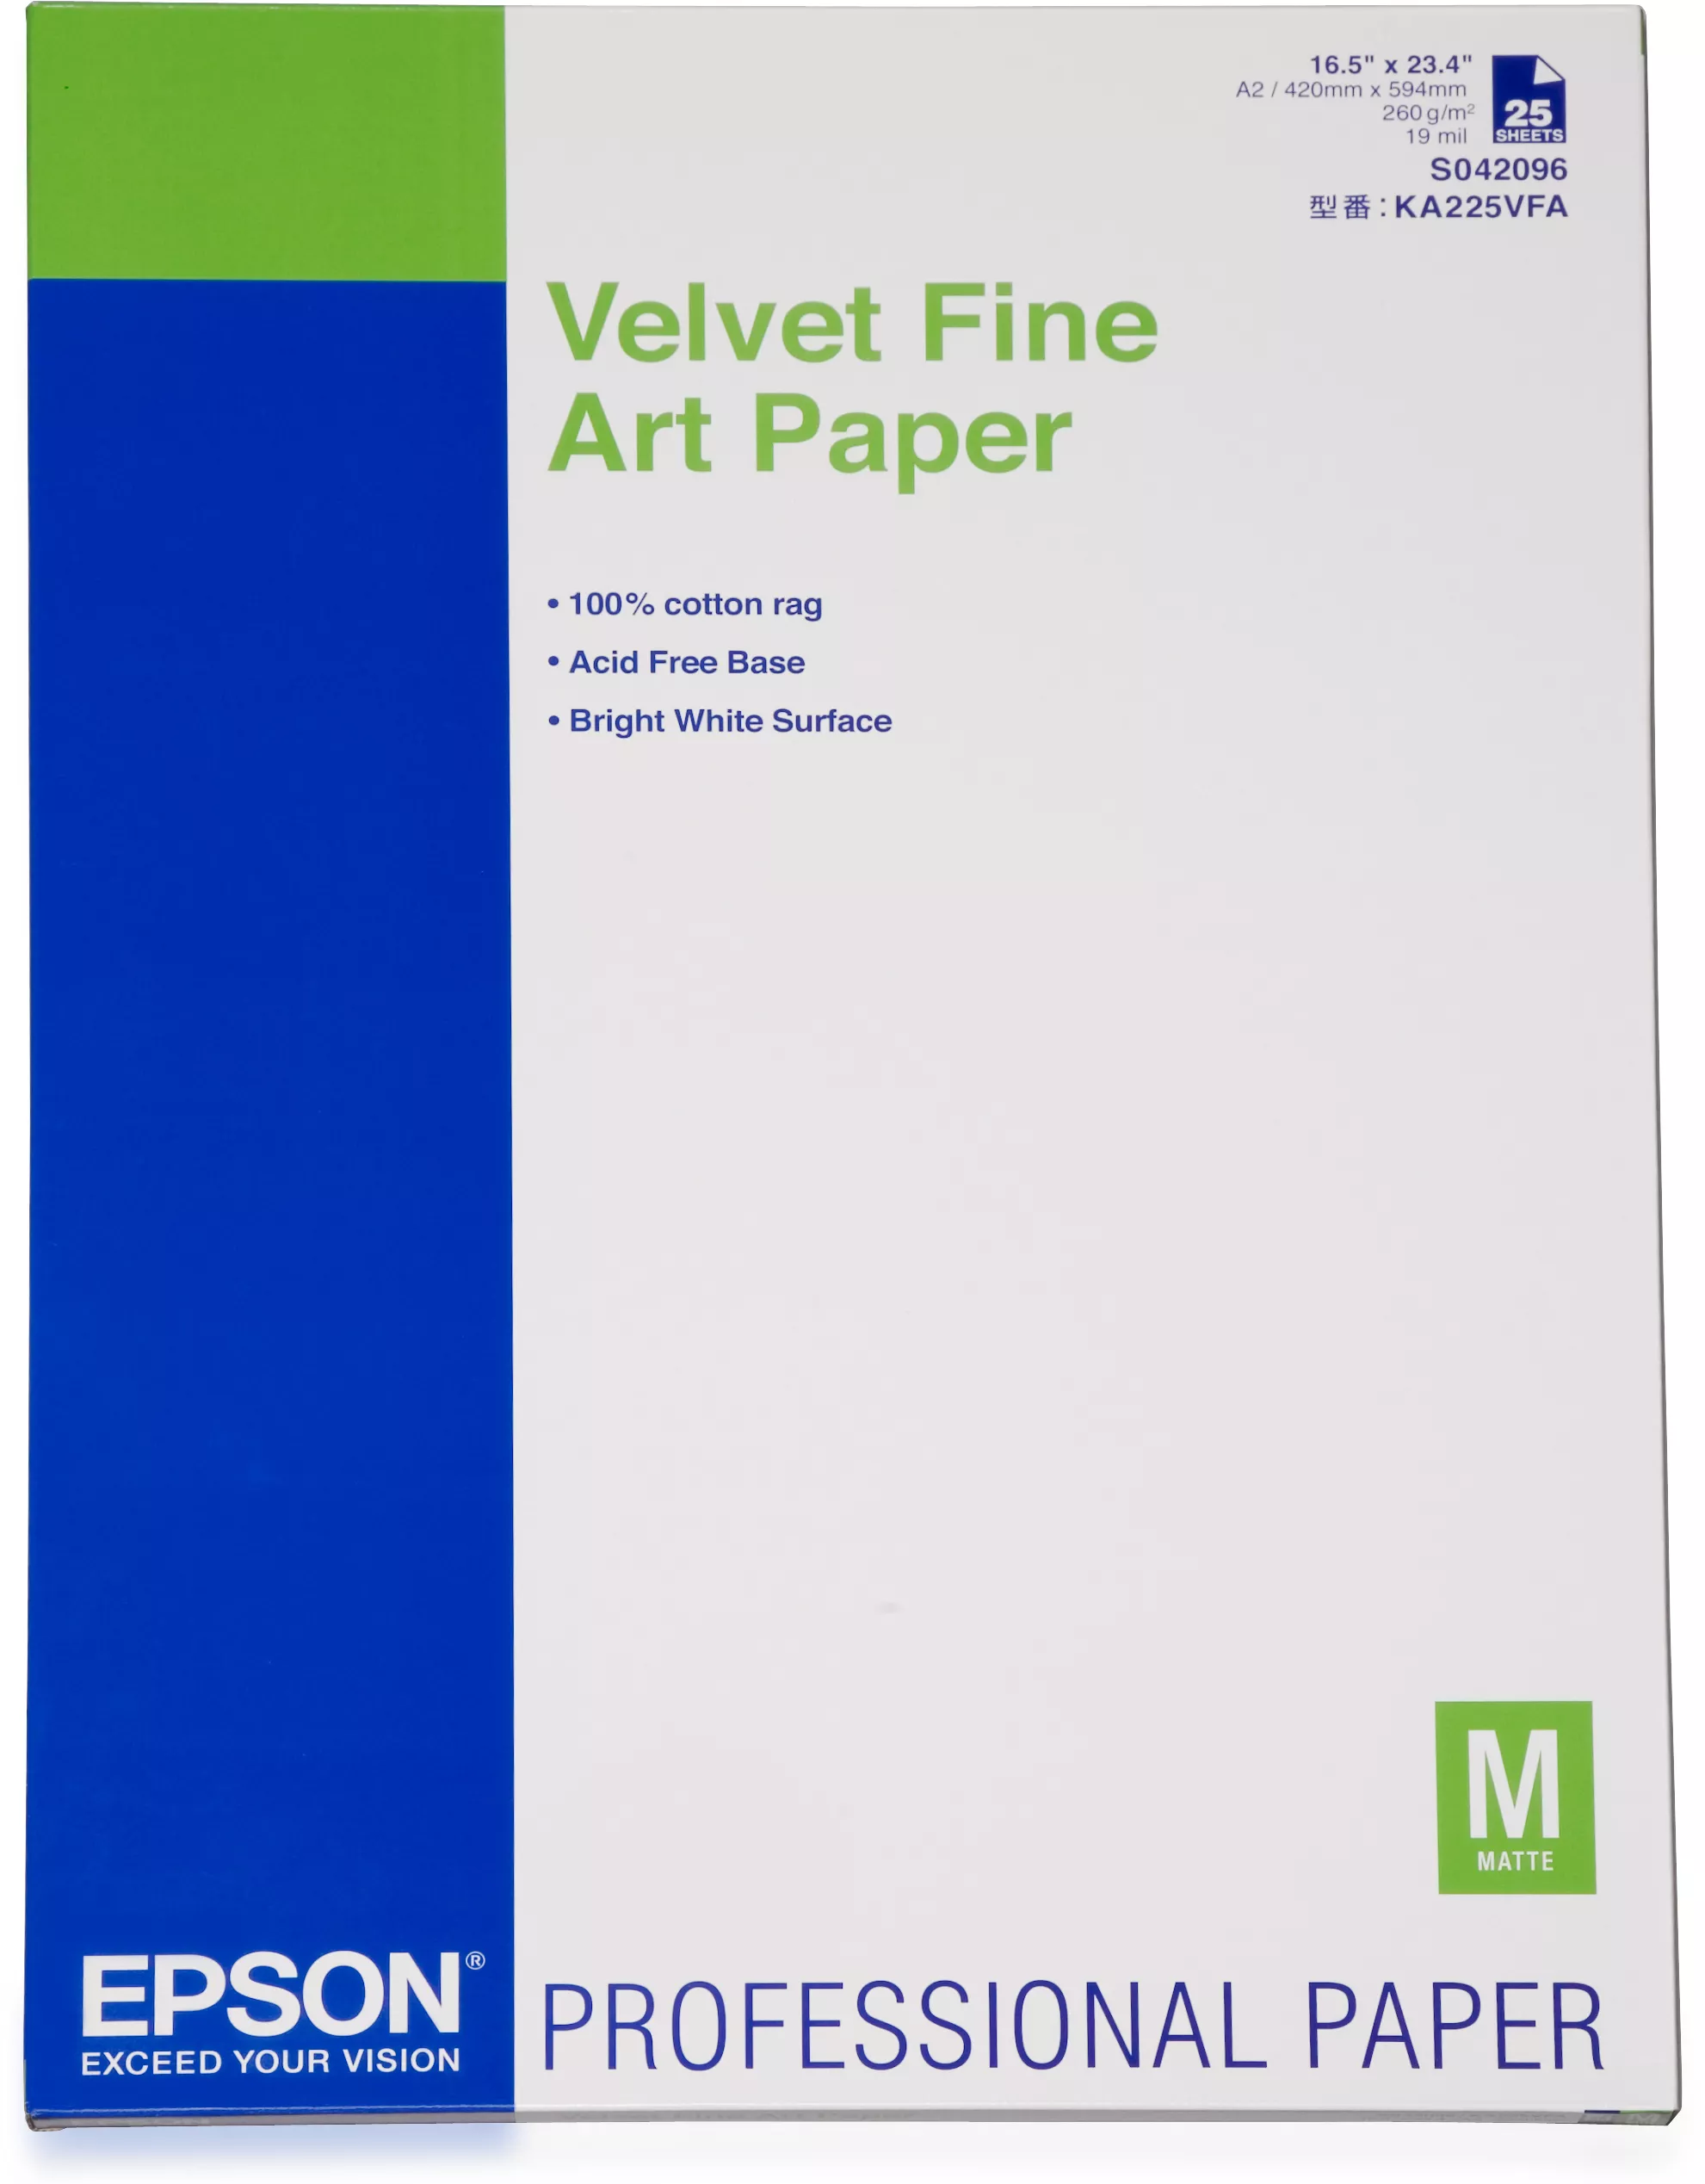 Achat Autre Imprimante Epson Pap d'Art Velvet 260g 25f. A2 (0,420x0,594m sur hello RSE